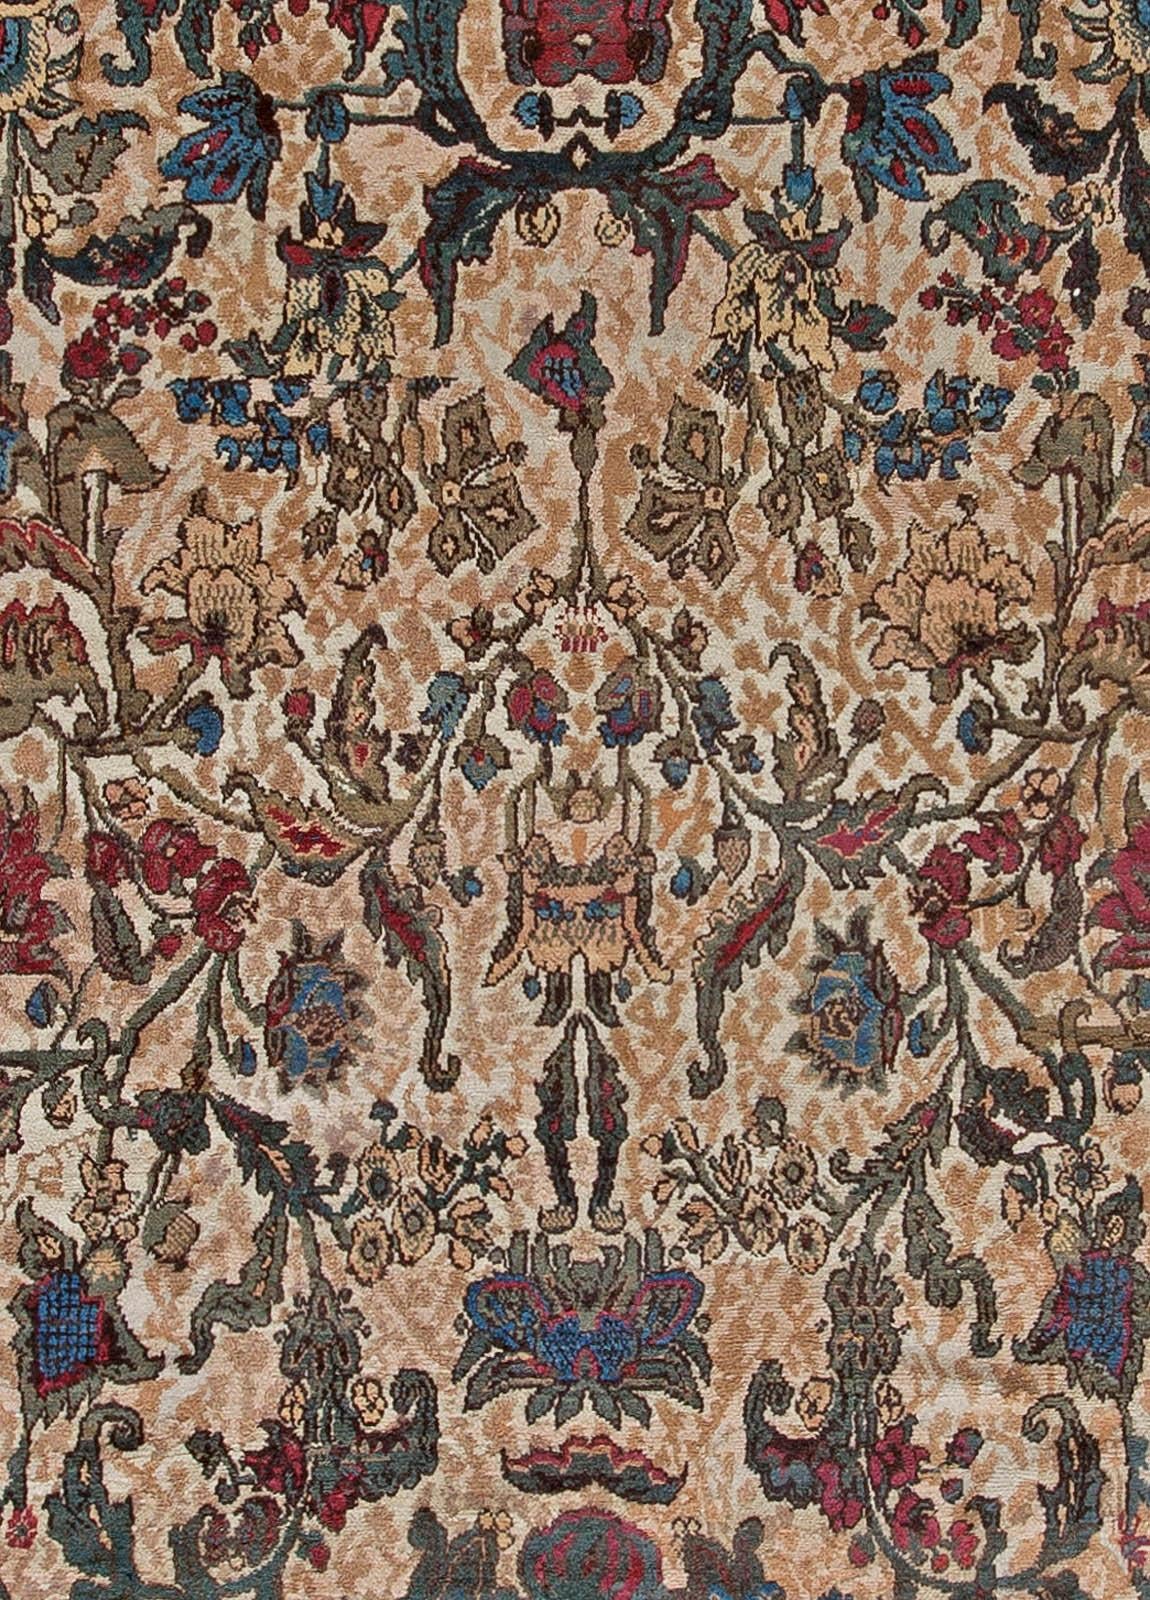 Oversized Antique Indian Bold Botanic handmade wool carpet
Size: 15'5